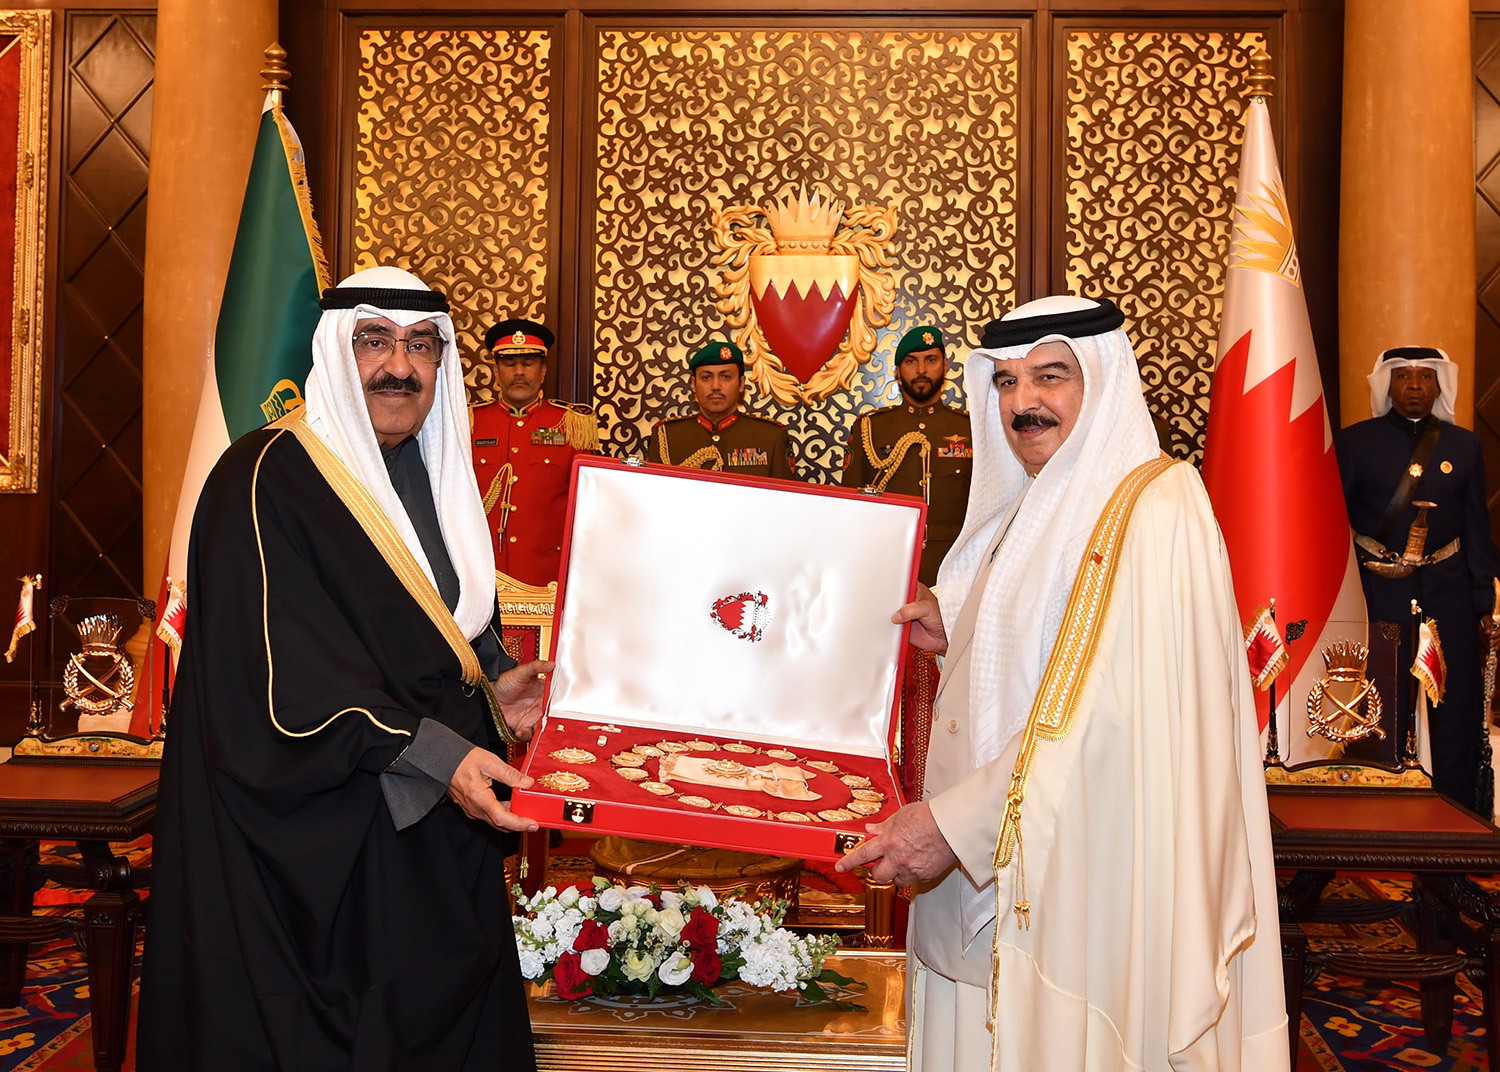 ملك البحرين يقلد سمو أمير البلاد قلادة الشيخ عيسى بن سلمان آل خليفة من الدرجة الممتازة